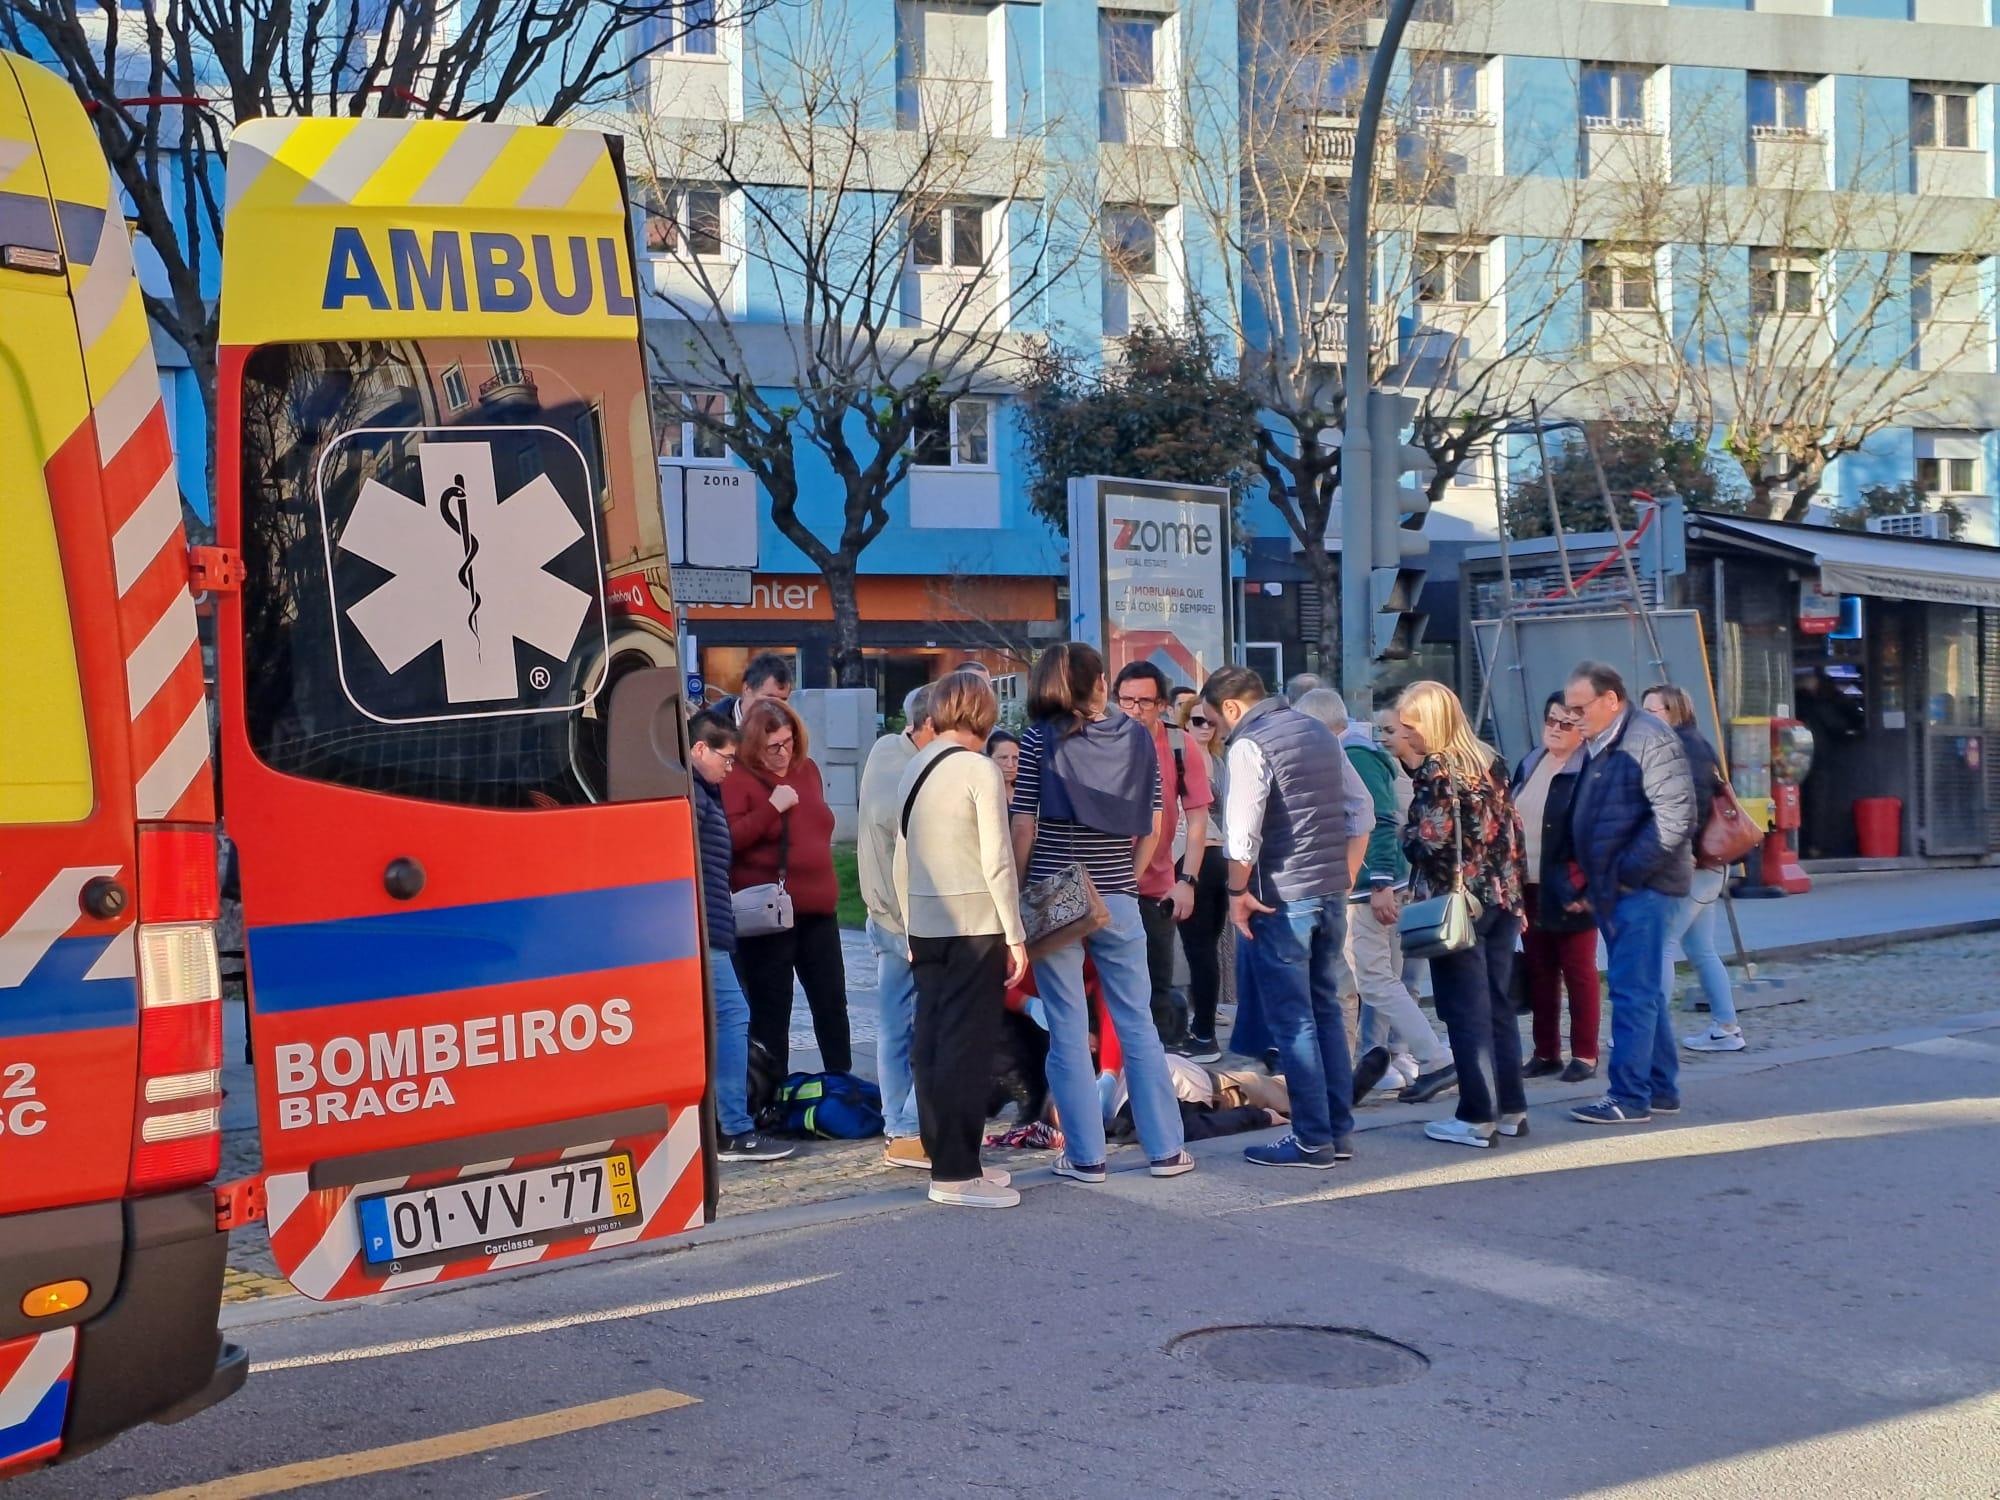 Homem de 65 anos ferido ao ser atropelado por trotinete no centro de Braga